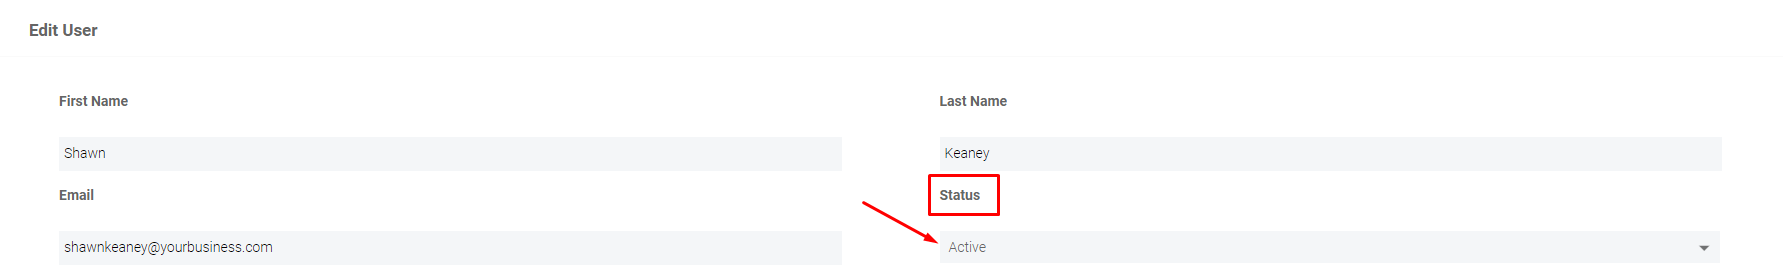 admin edit user status